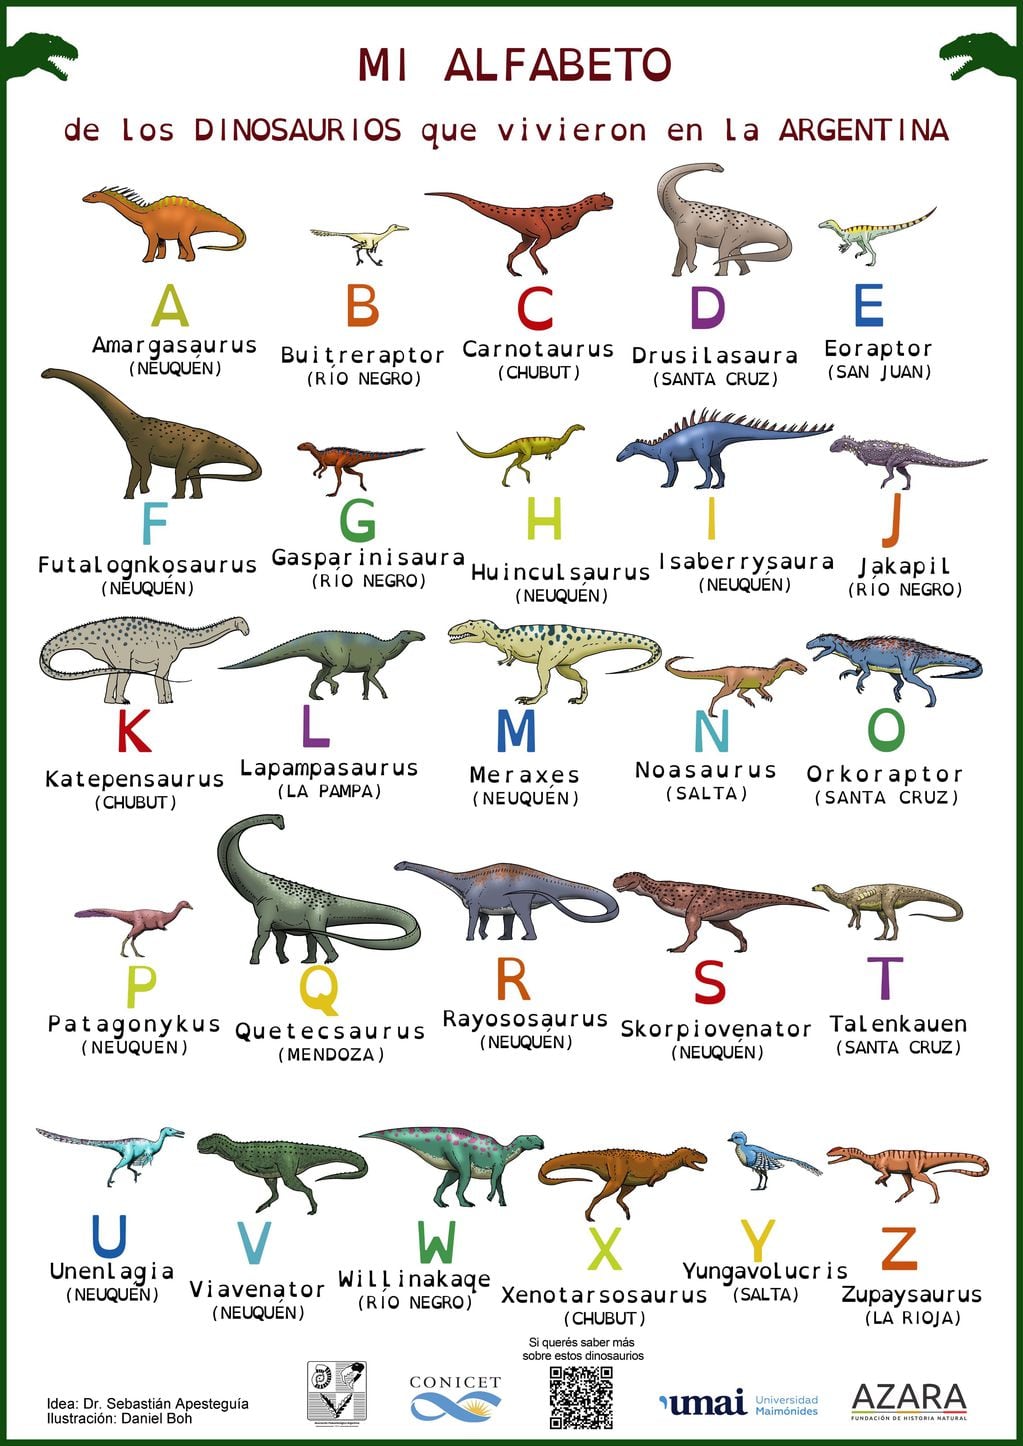 El abecedario de los dinosaurios argentinos.